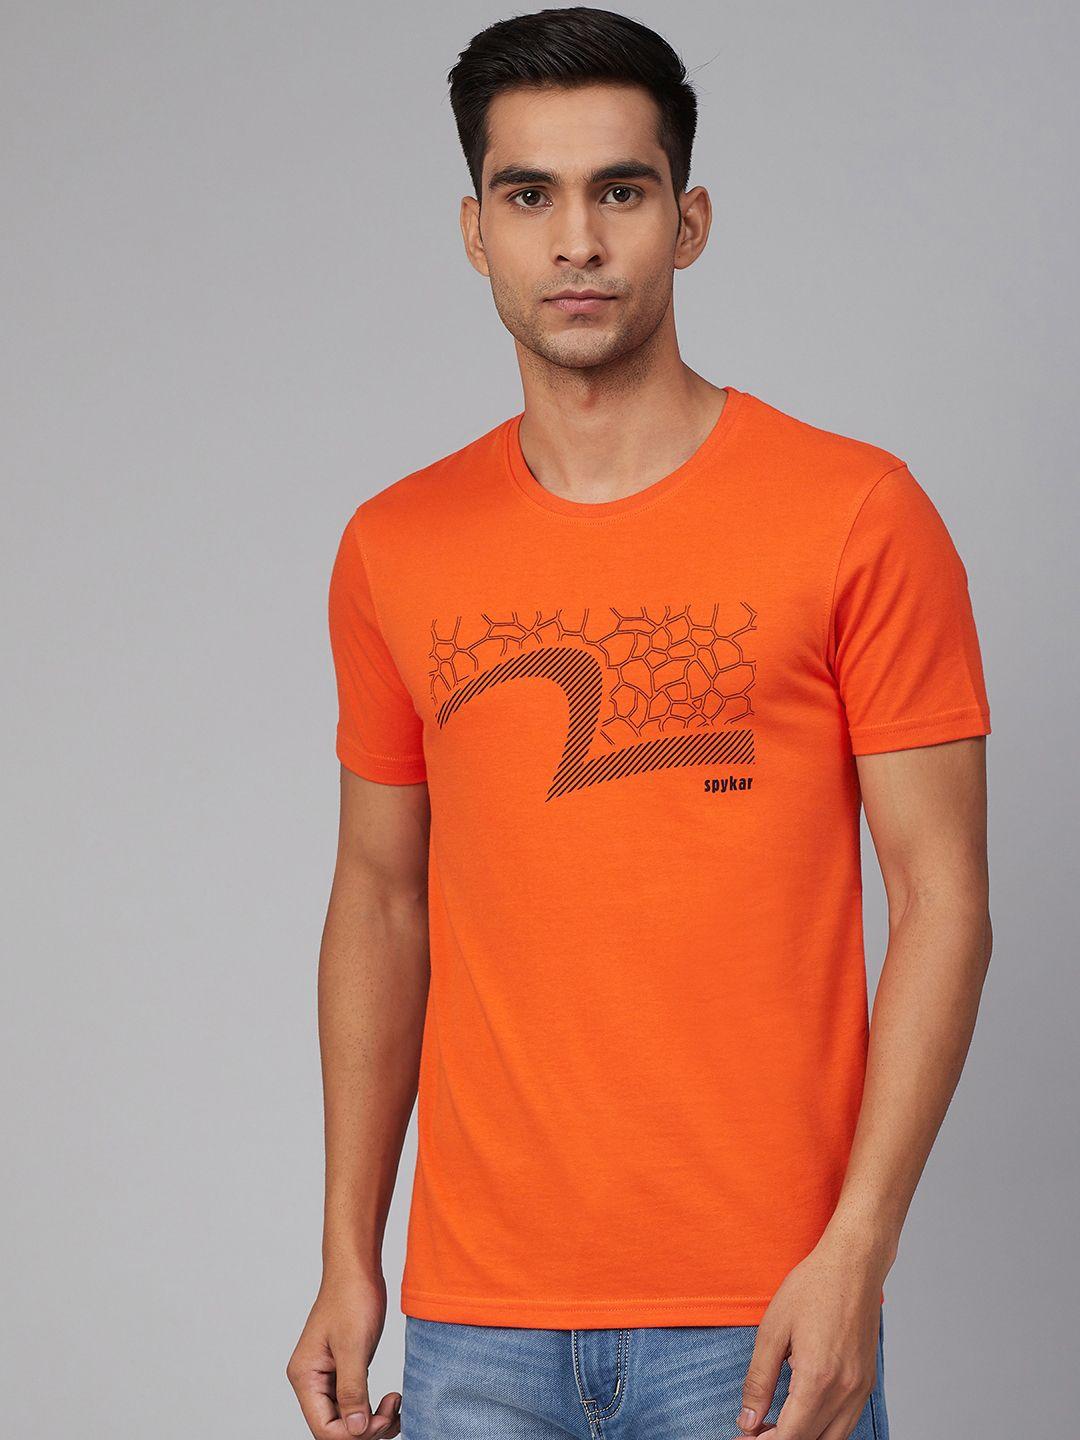 underjeans-by-spykar-men-orange-&-black-printed-round-neck-t-shirt